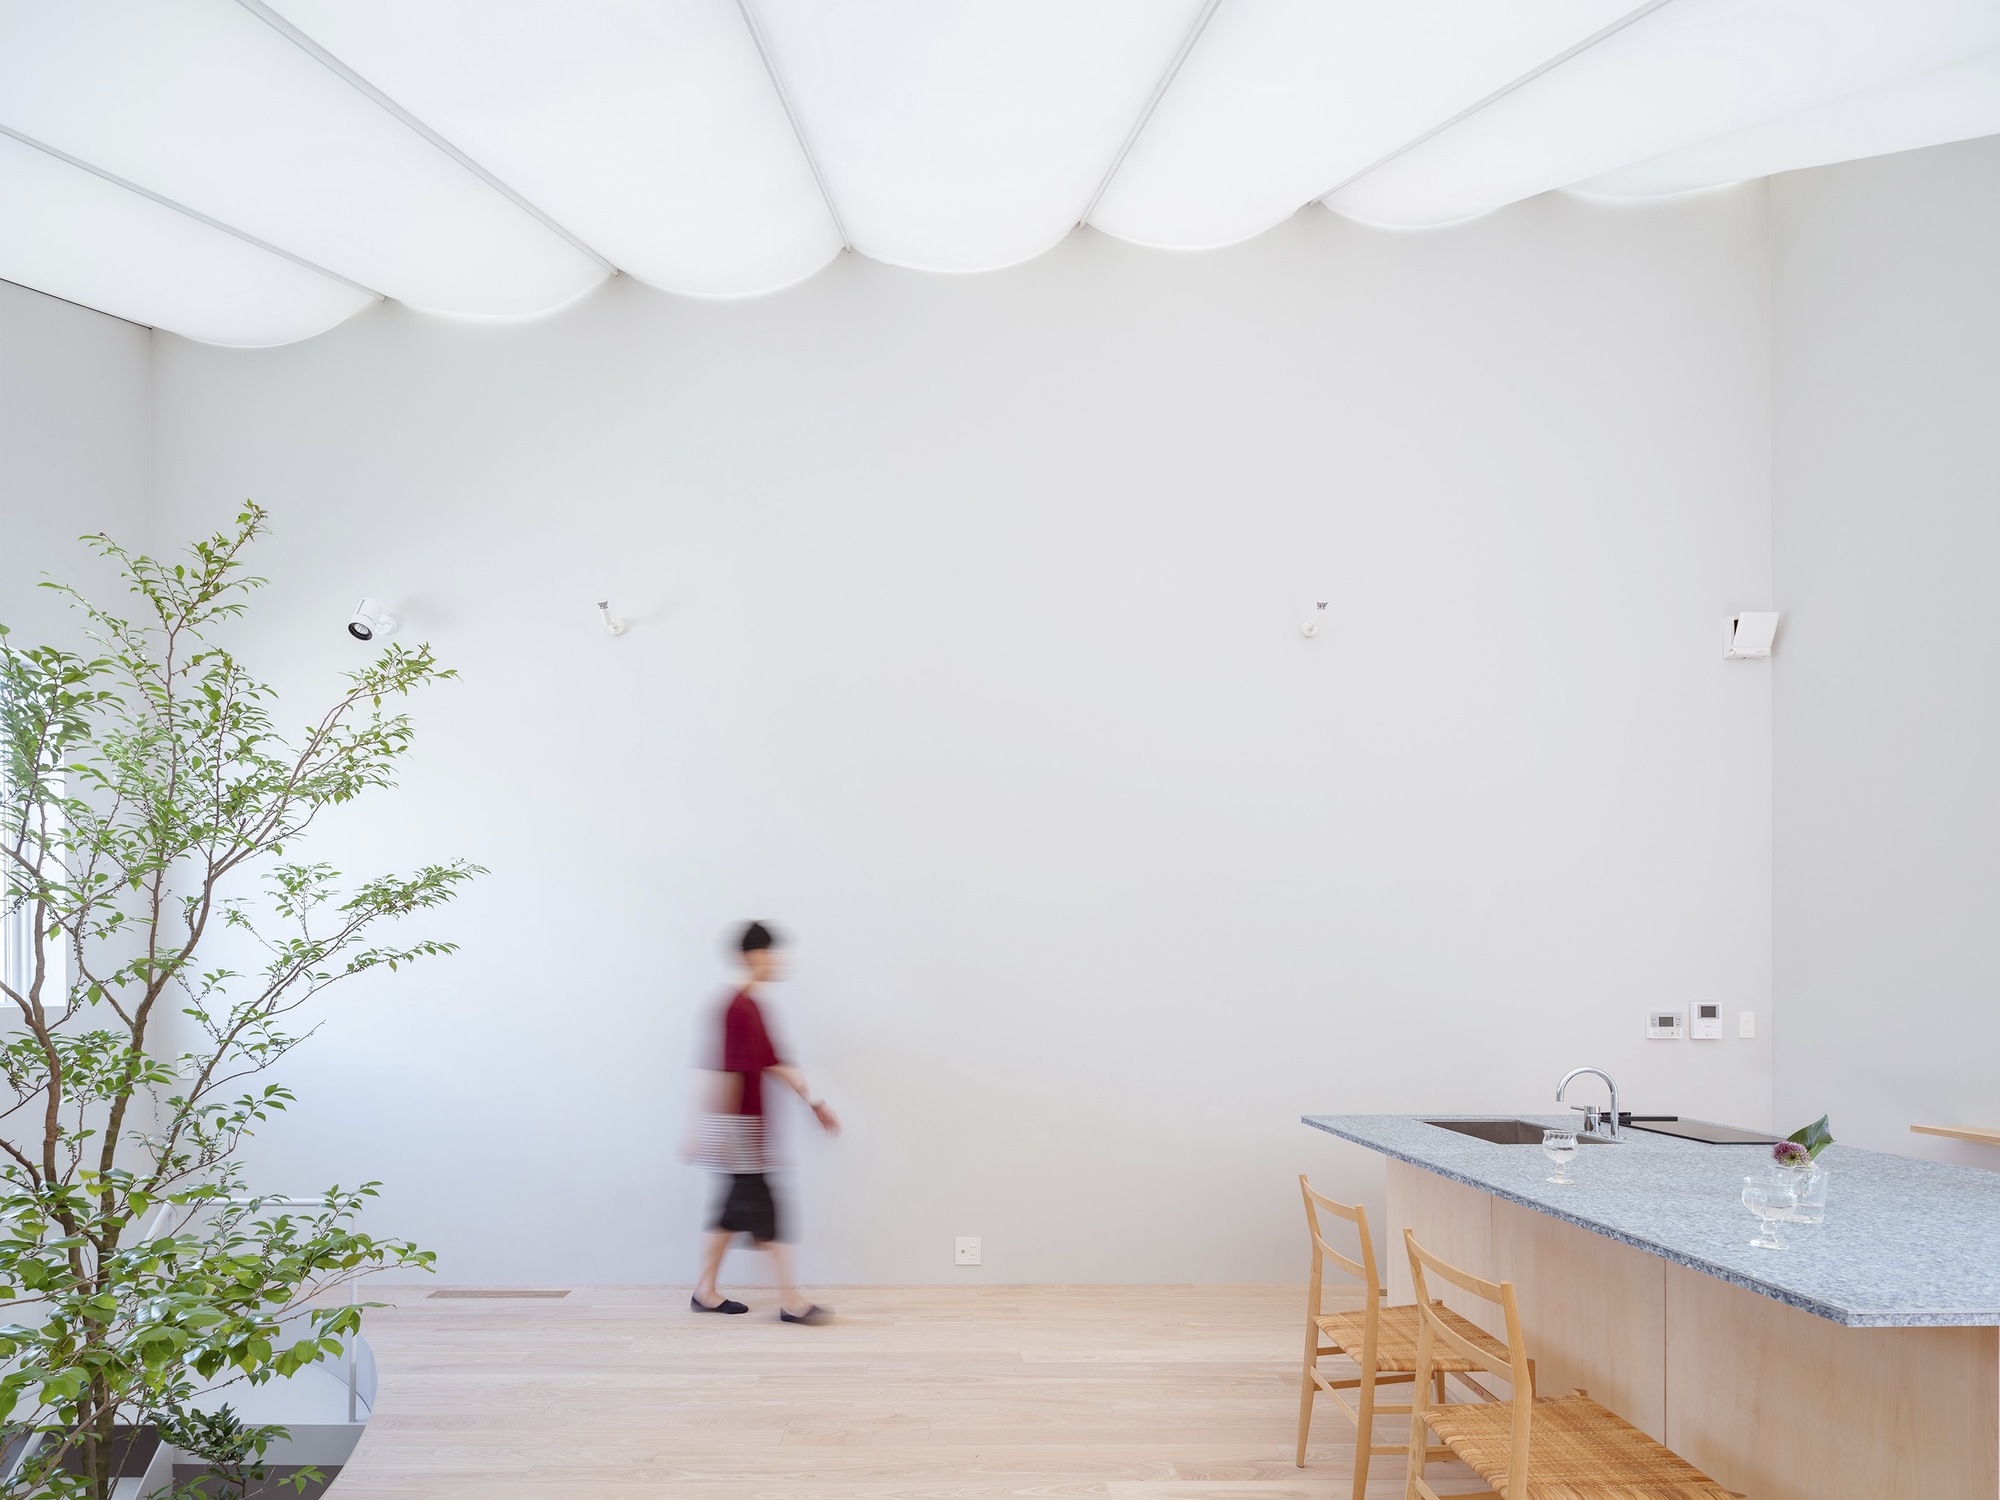 Дом с мембранной крышей / Yuko Nagayama & Associates + shohei yoshida + Associates